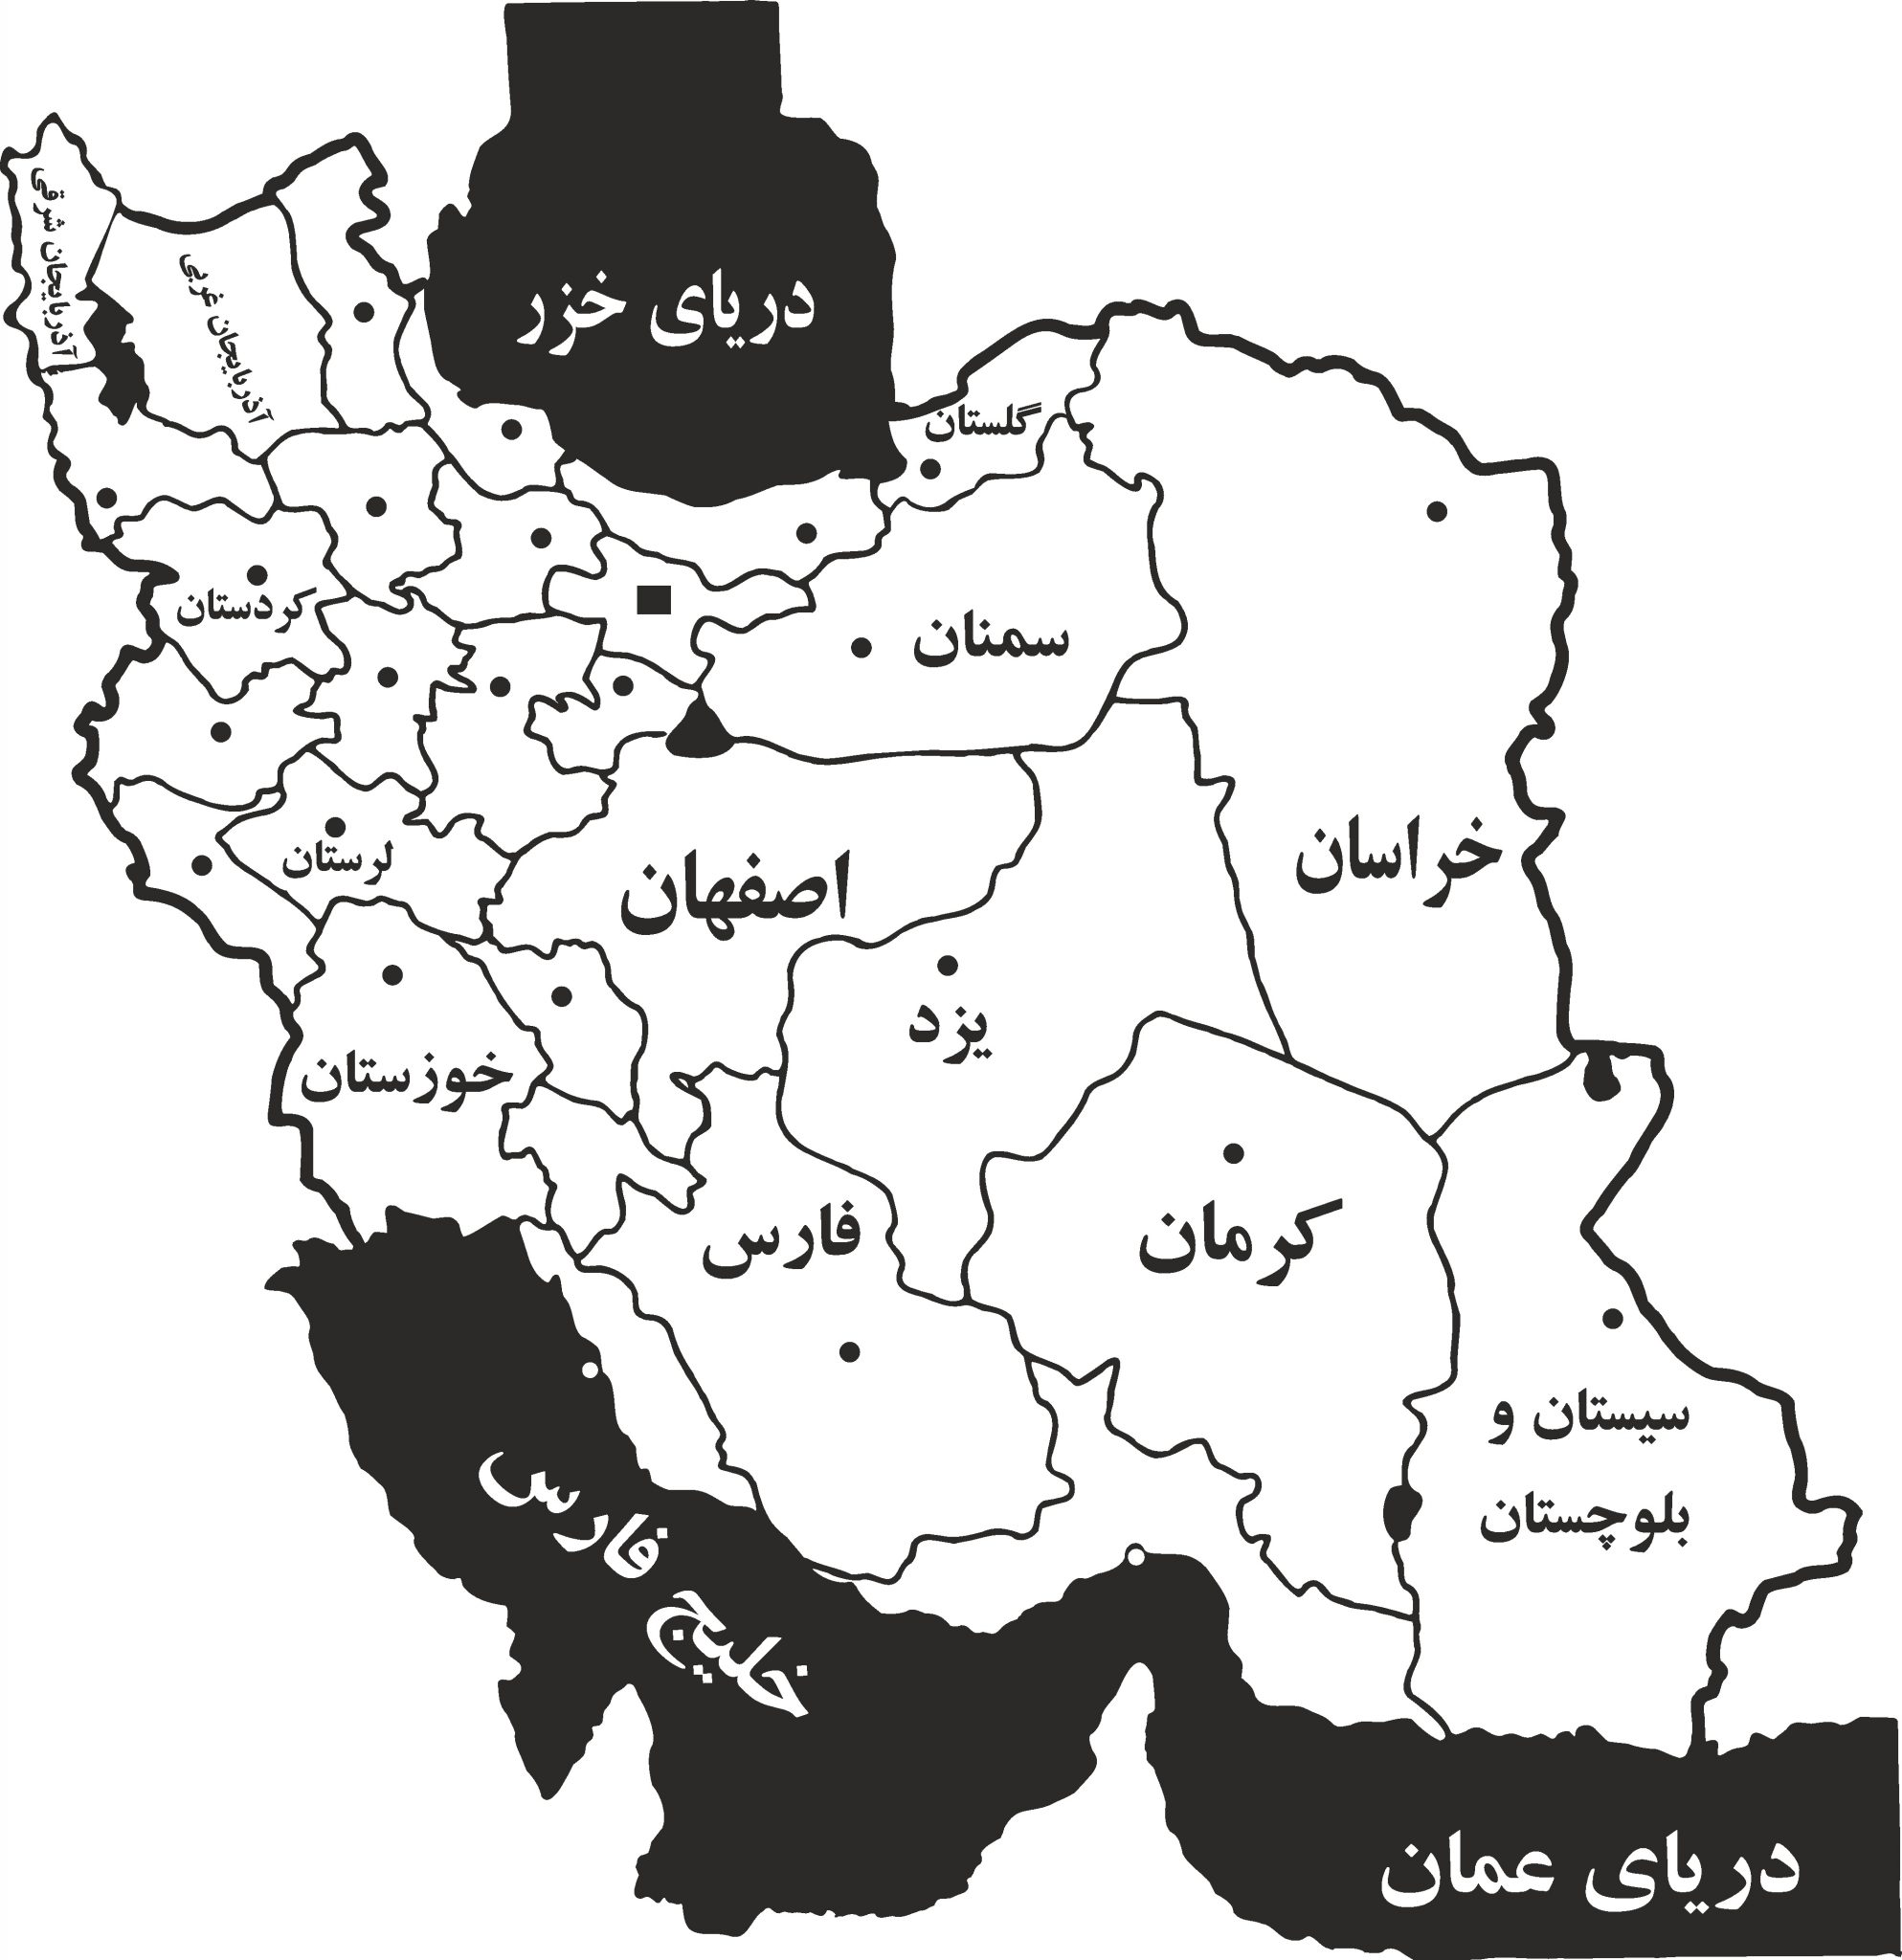 دانلود عکس نقشه ایران سیاه و سفید
